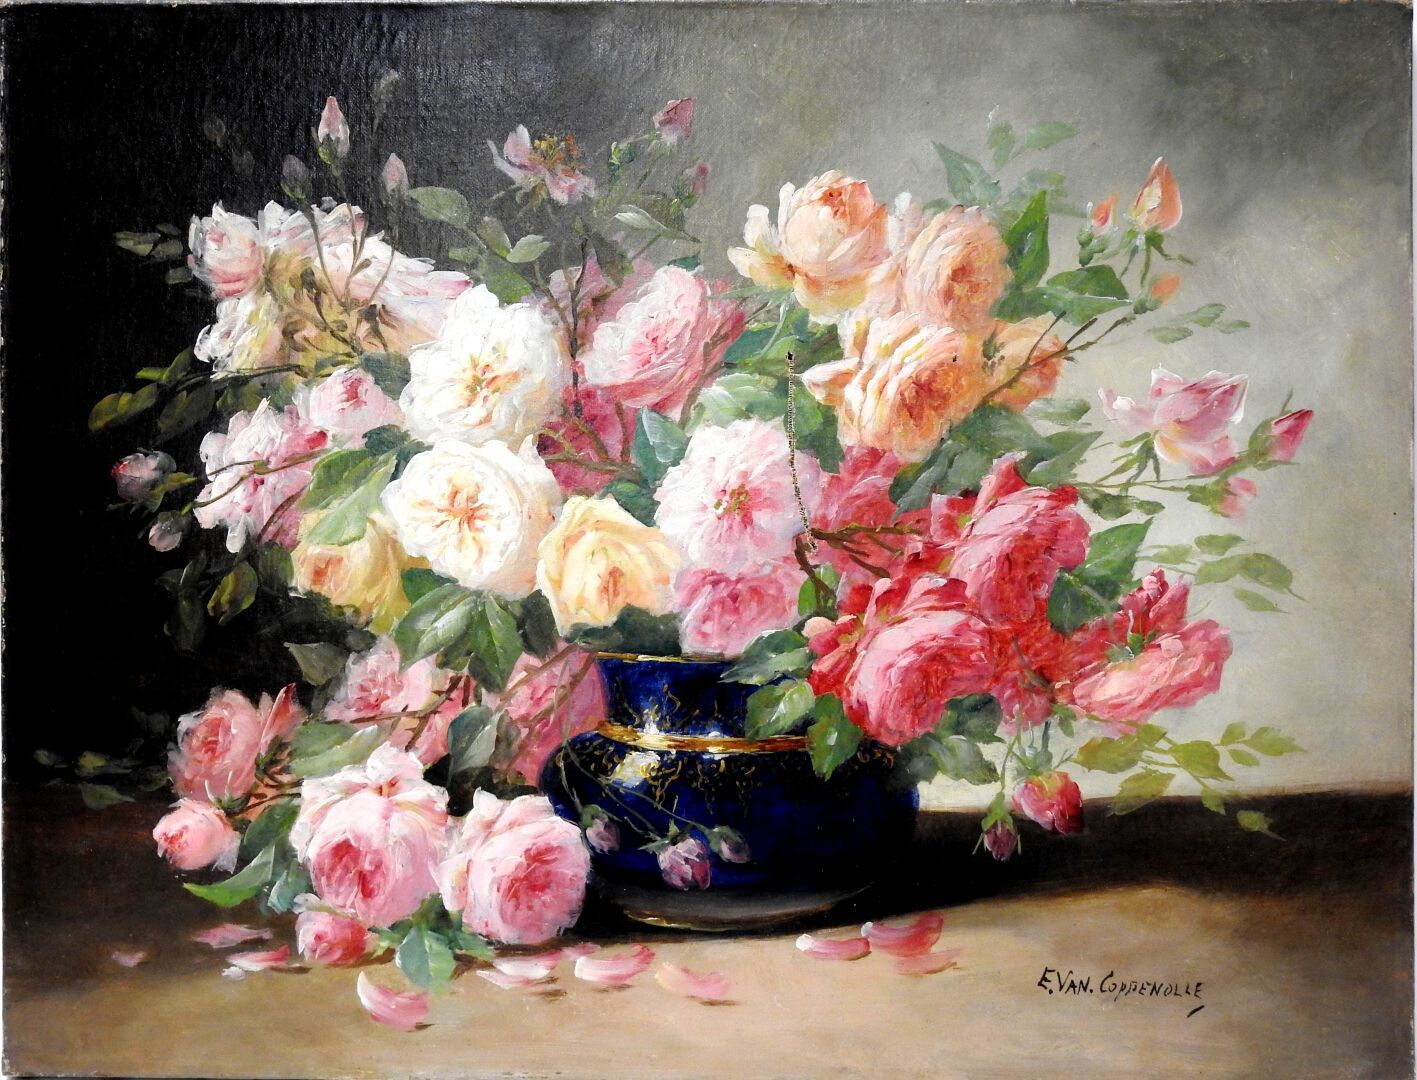 Null Edmond VAN COPPENOLLE (c.1843/46-1915)

Nature morte au bouquet de roses.

&hellip;